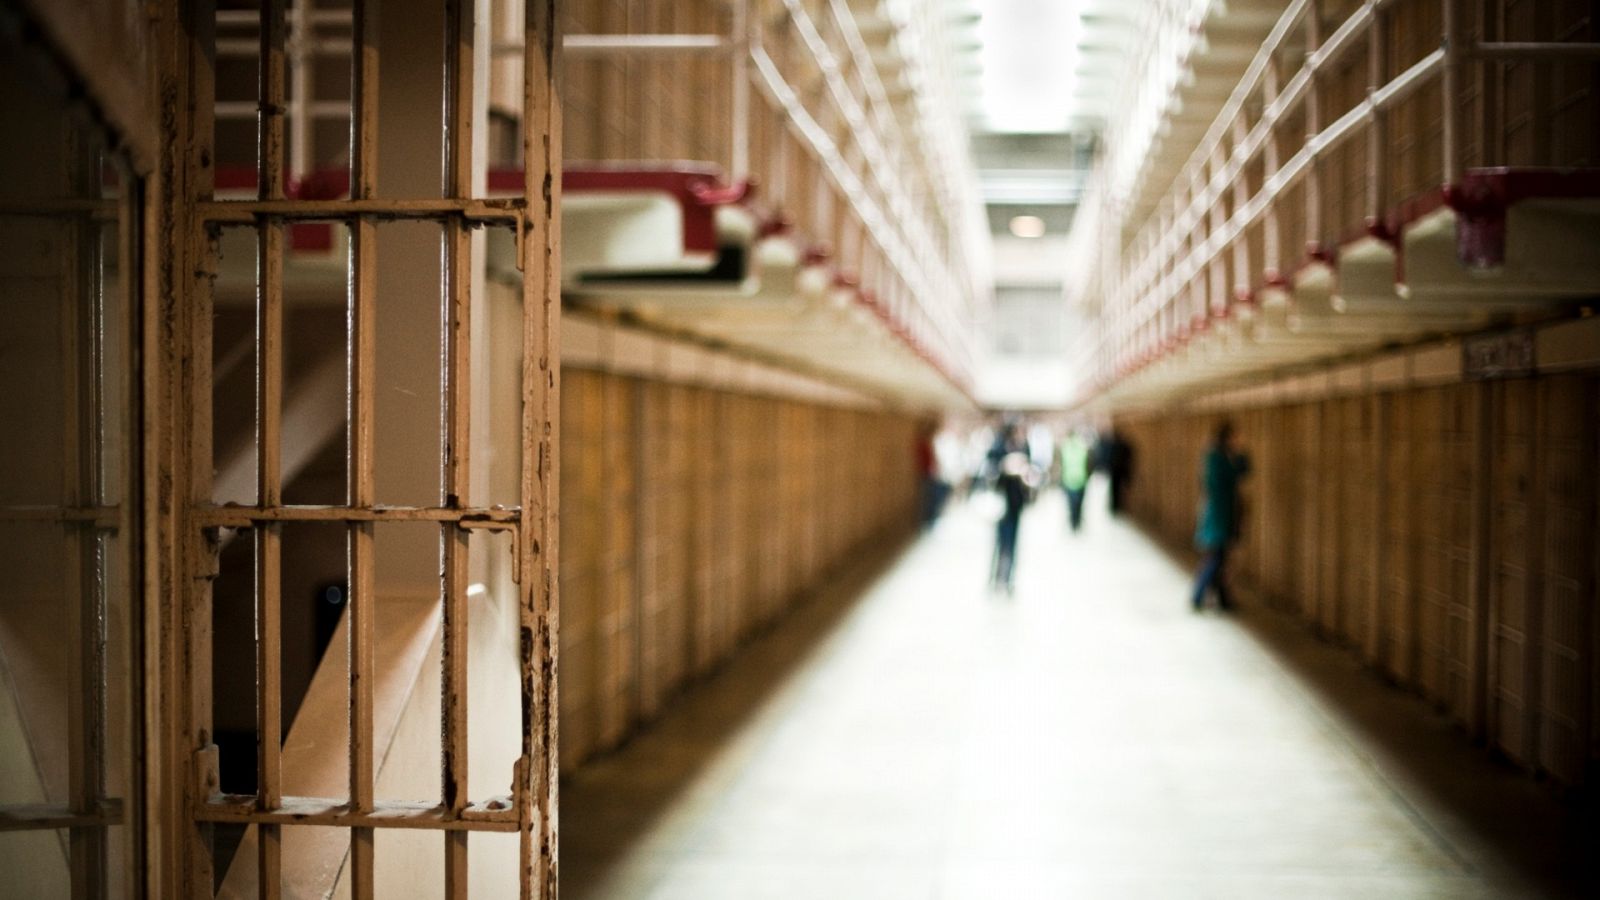 Investigan si funcionarios de prisión agredieron a la subdirectora de Seguridad de la cárcel de Villena